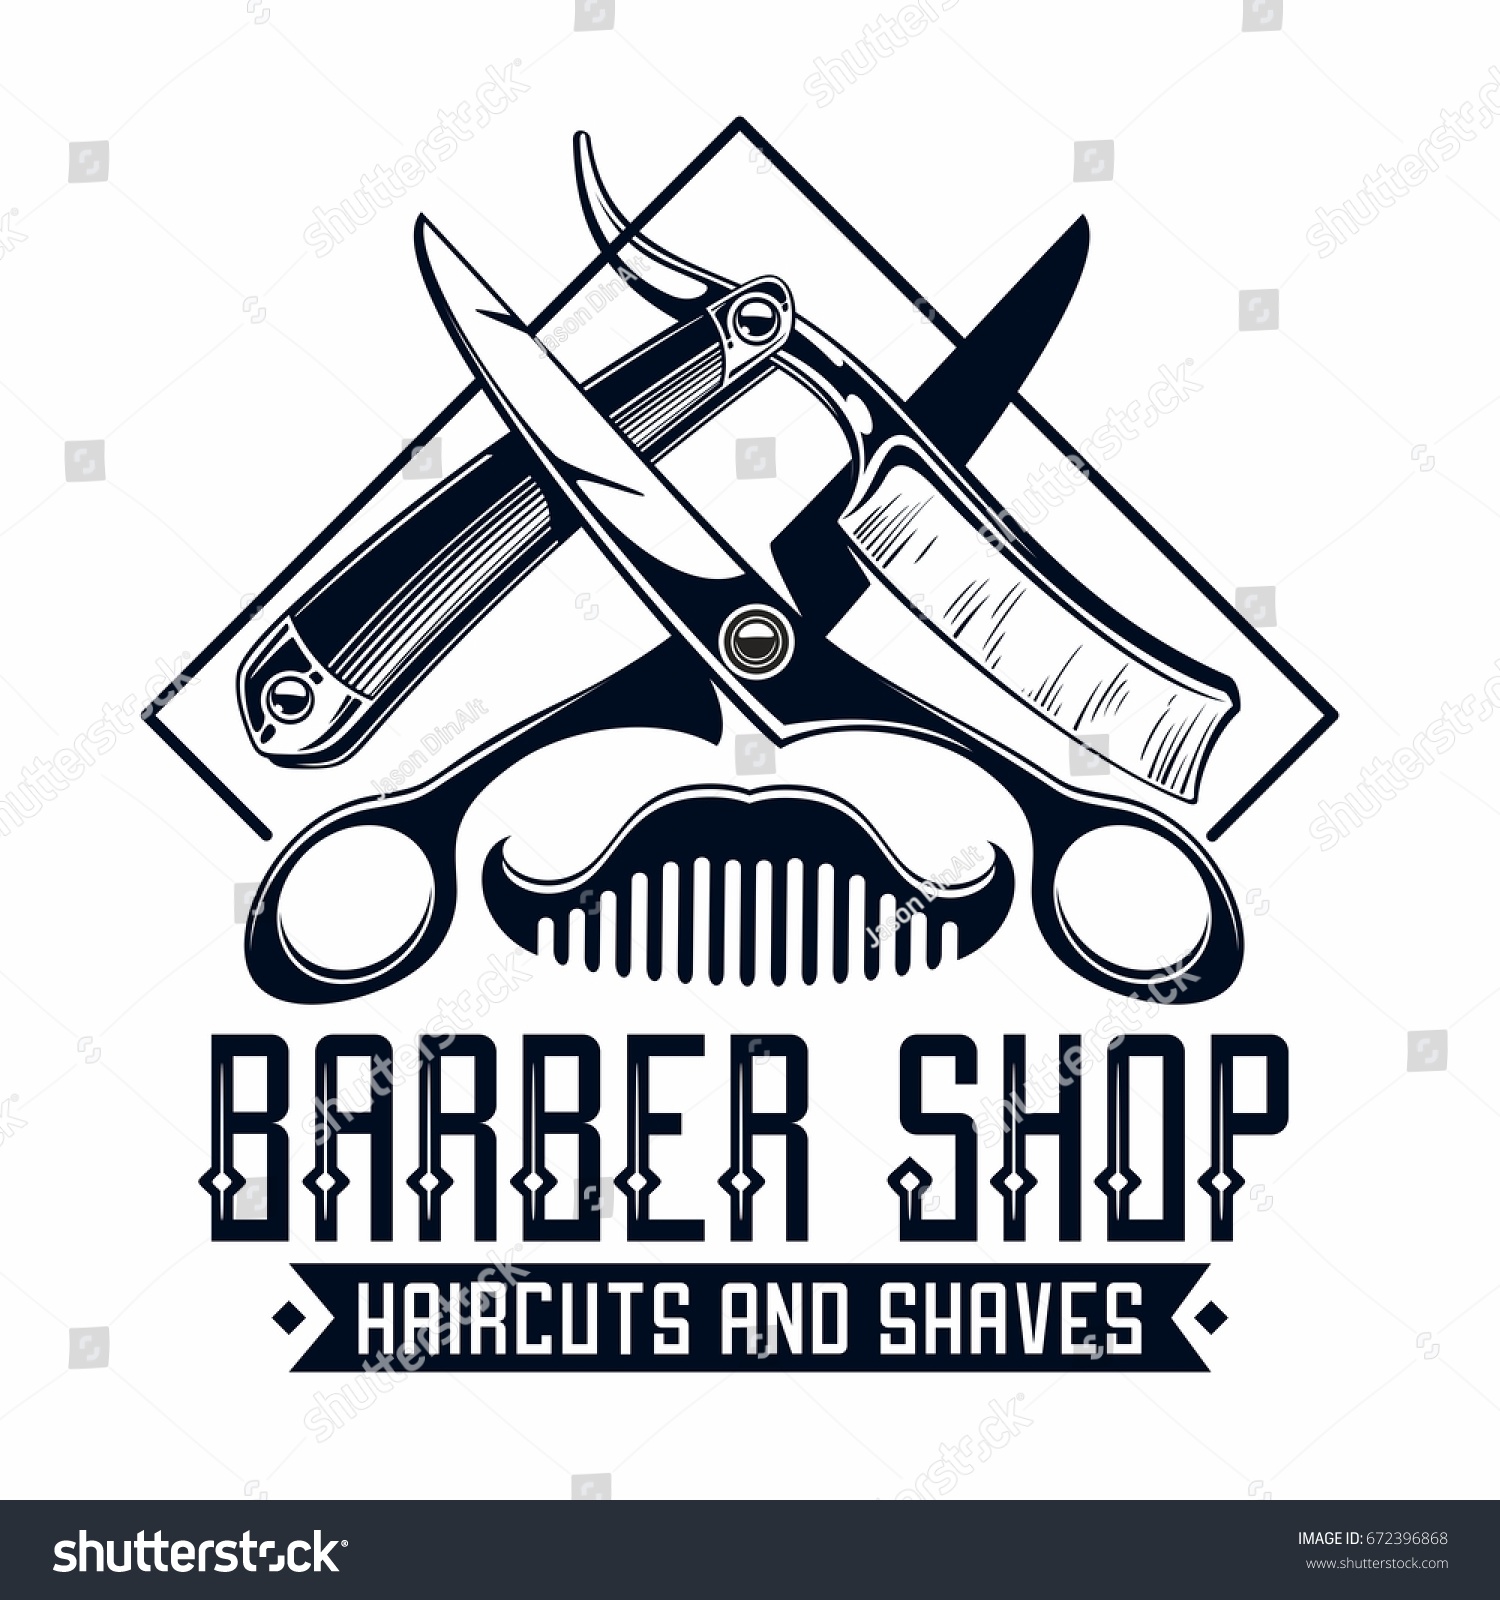 barber shop logo #672396868